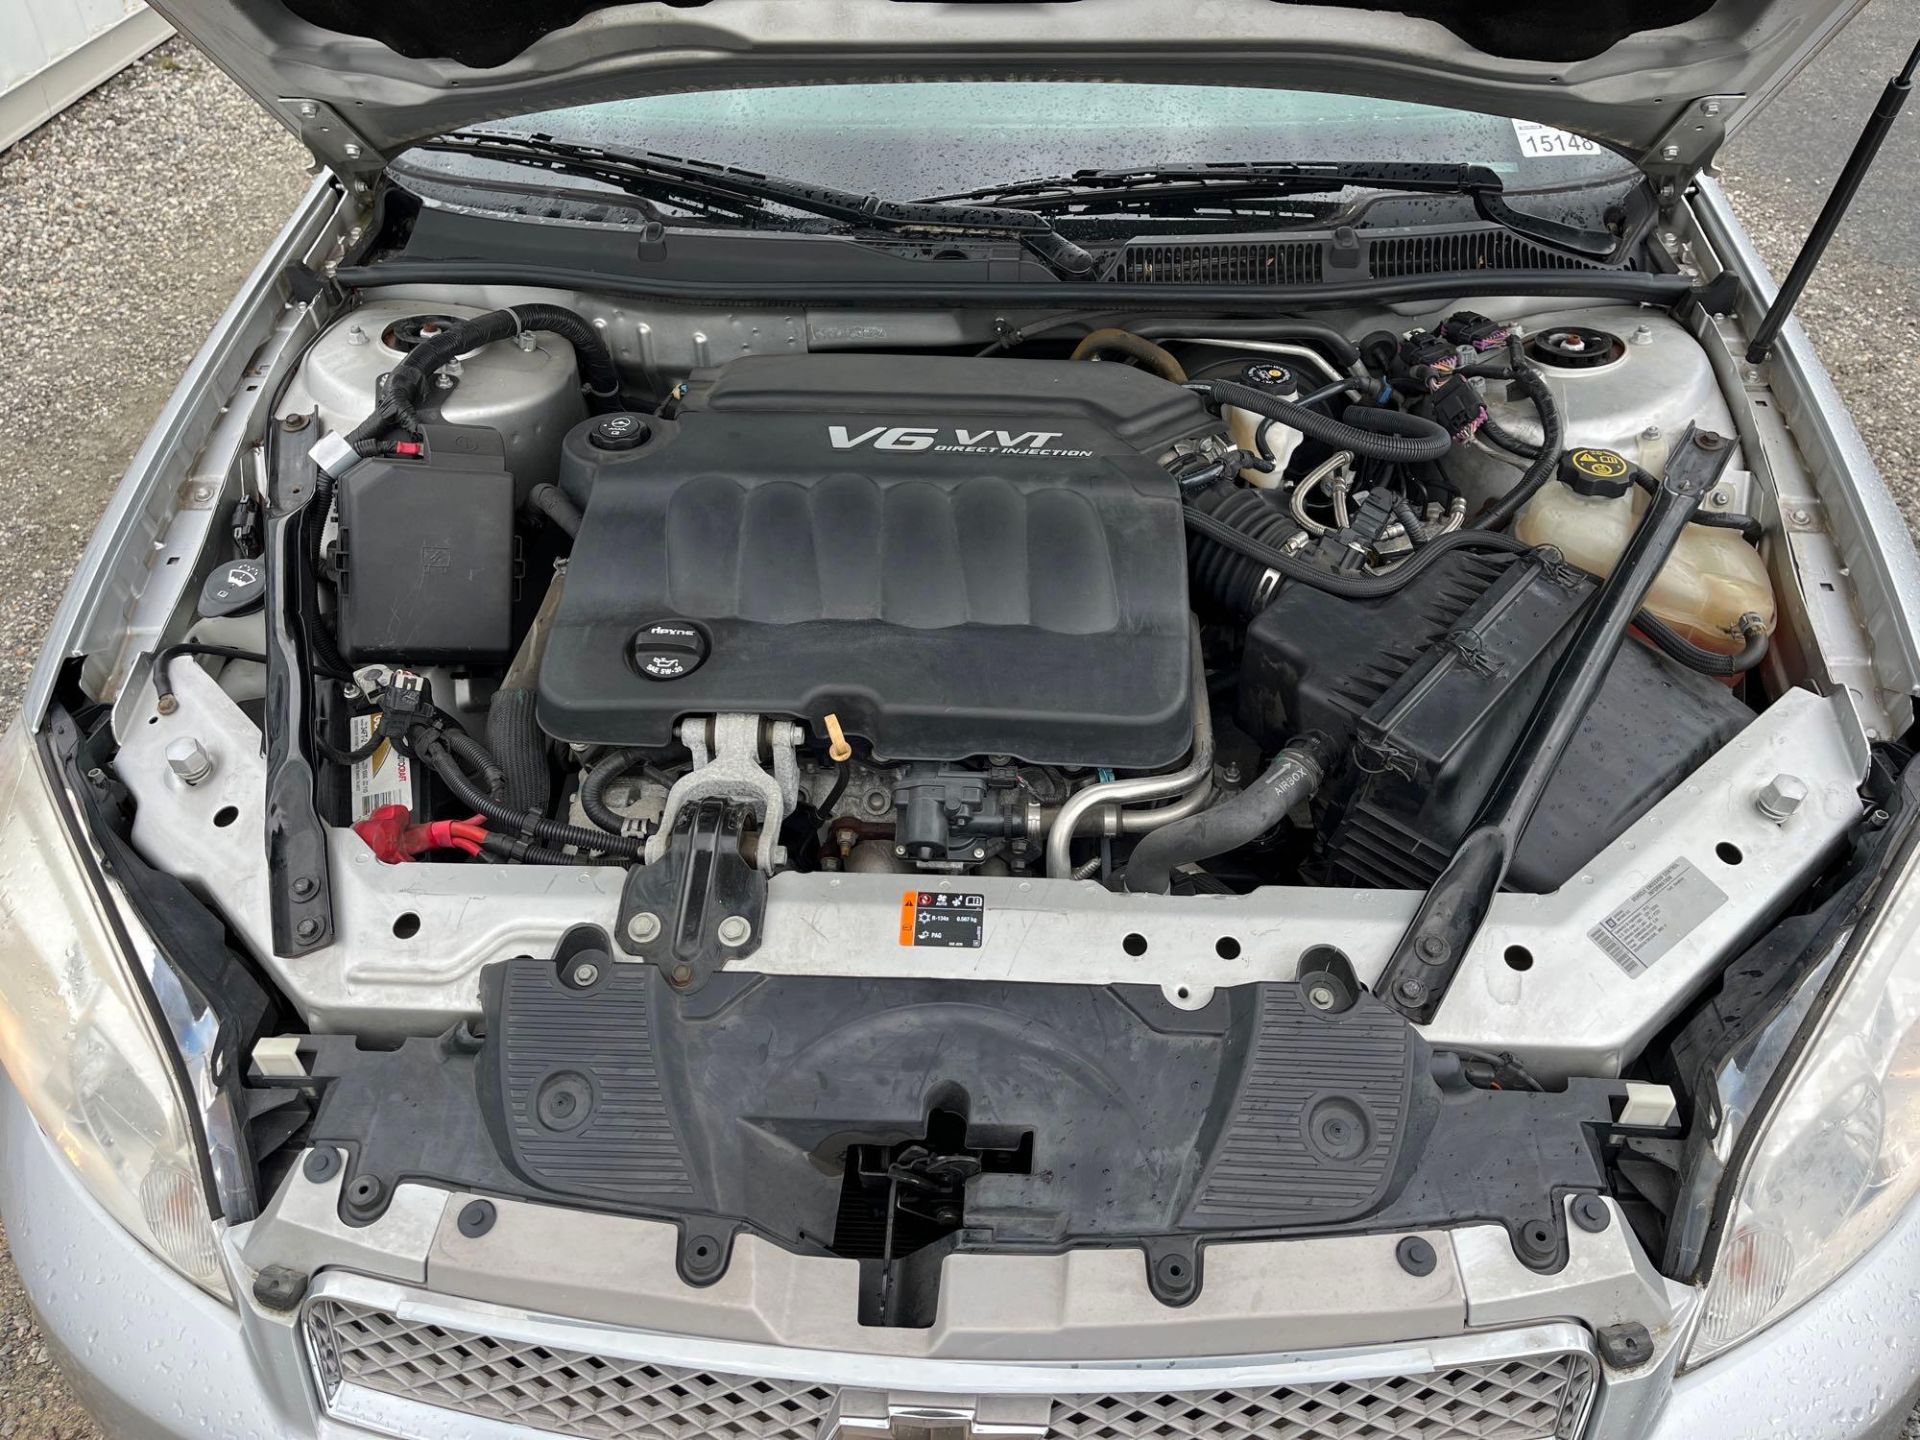 2012 Chevrolet Impala - Image 12 of 17